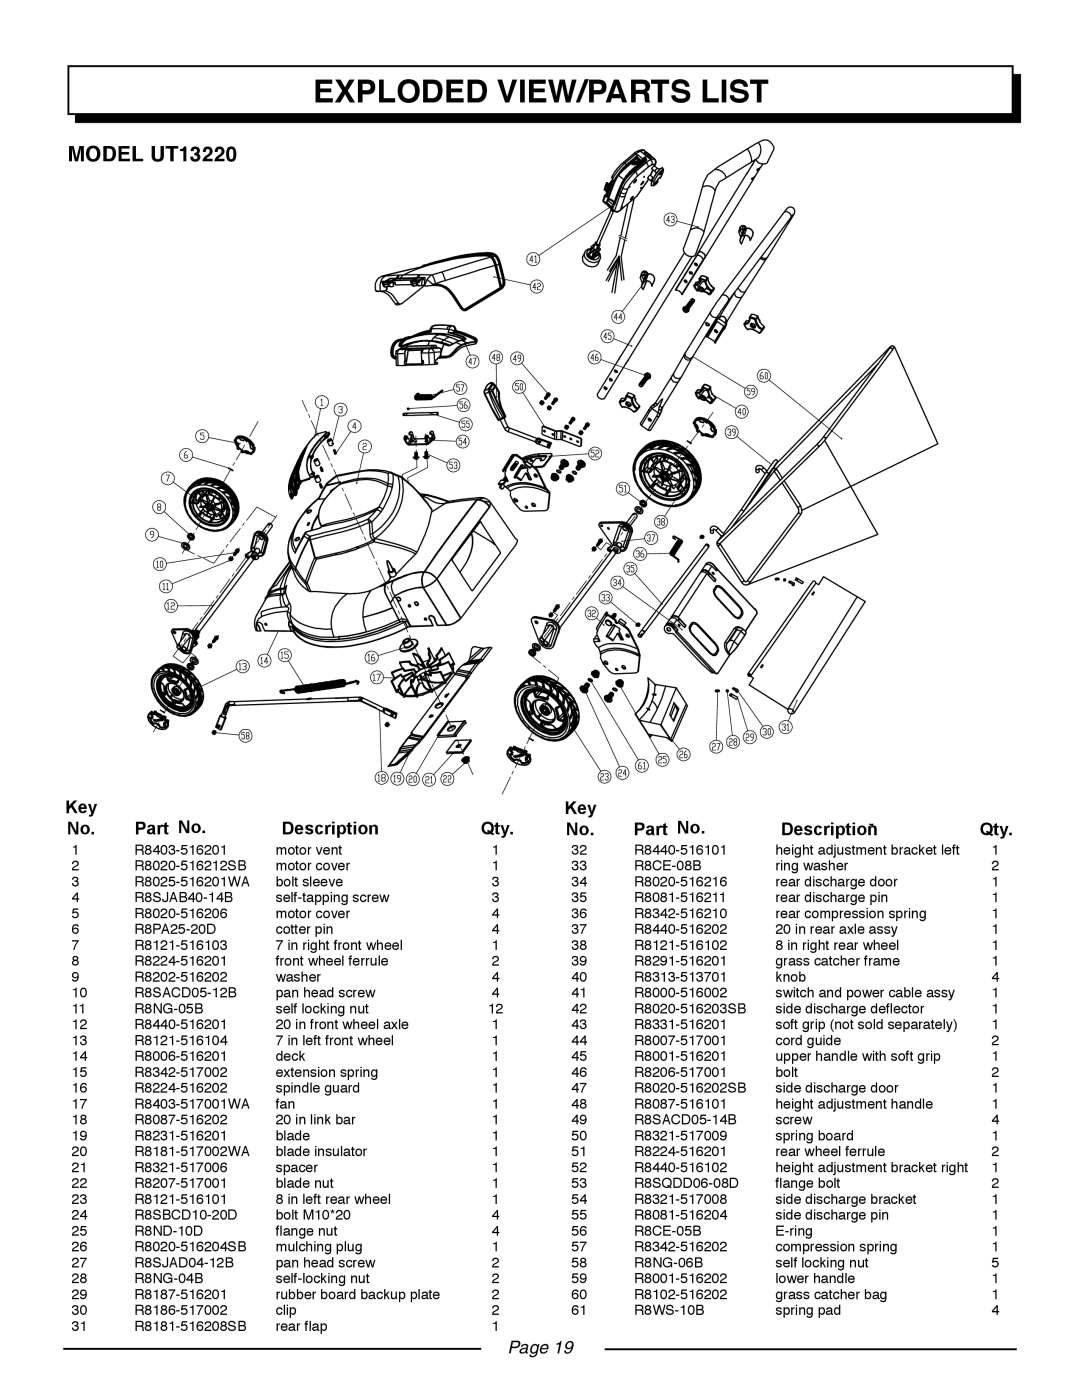 Homelite UT13218 manual MODEL UT13220, Exploded View/Parts List, Description, Page 